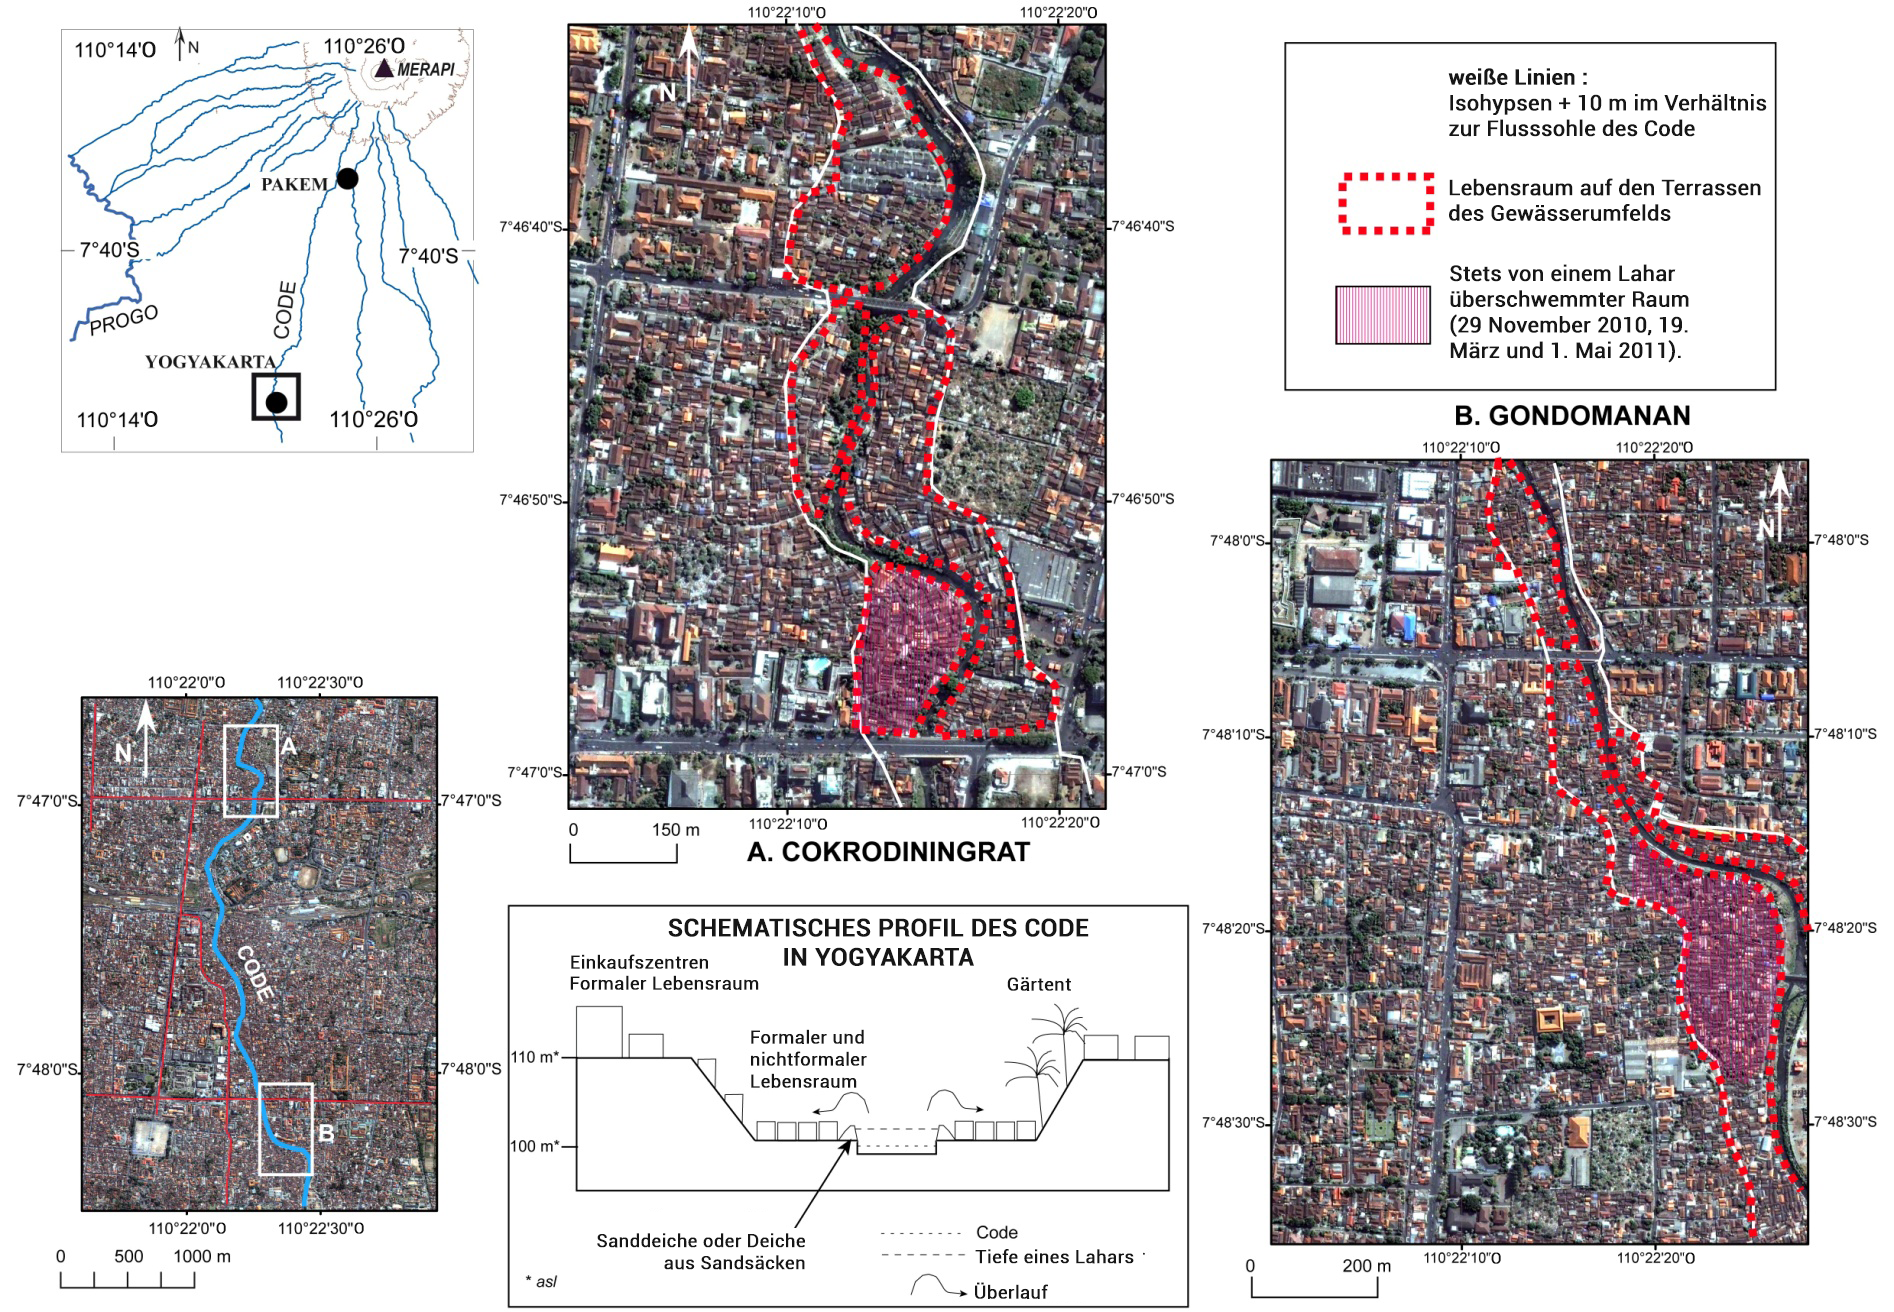 vues aériennes et schémas représentant les lahars de 2010 au centre de l'espace urbain de l'agglomération de Yogyakarta